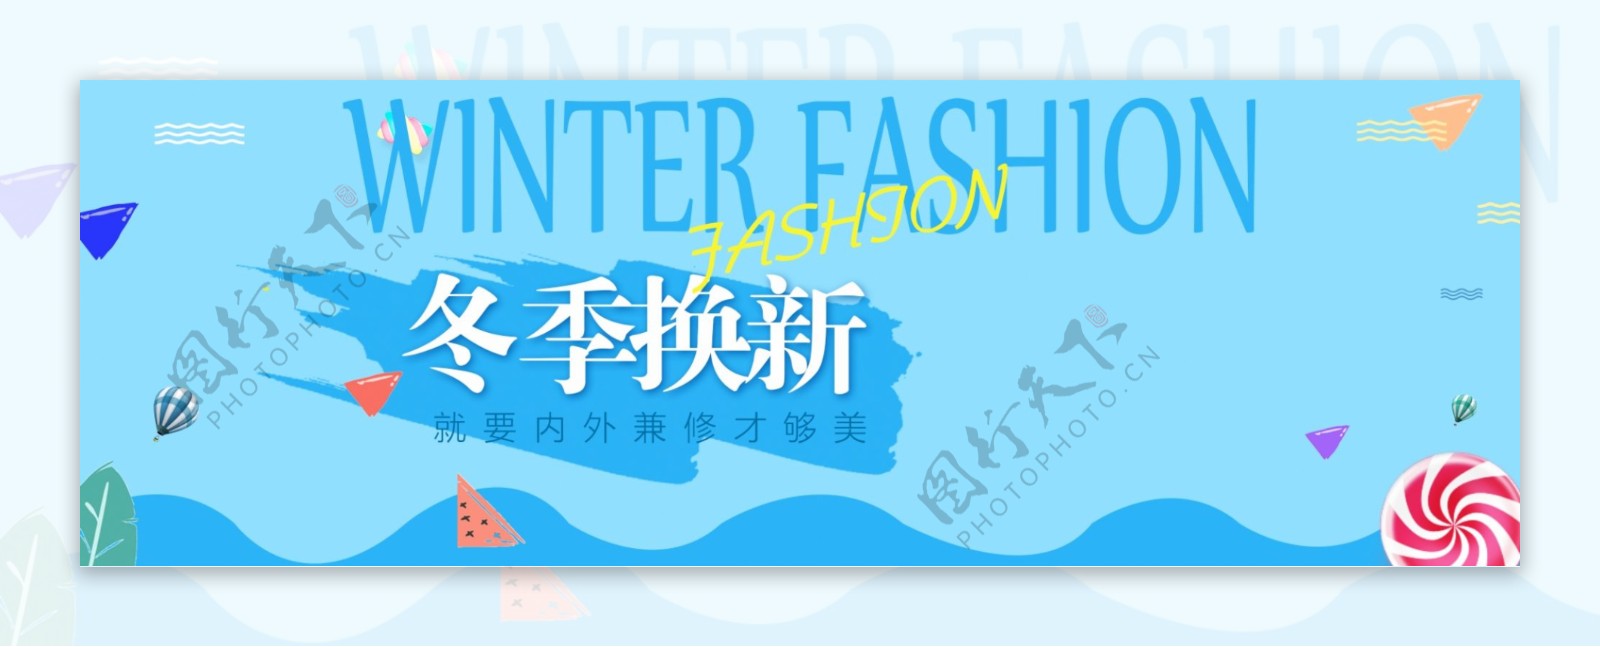 简约冬季女装上新活动促销海报banner冬季促销冬上新